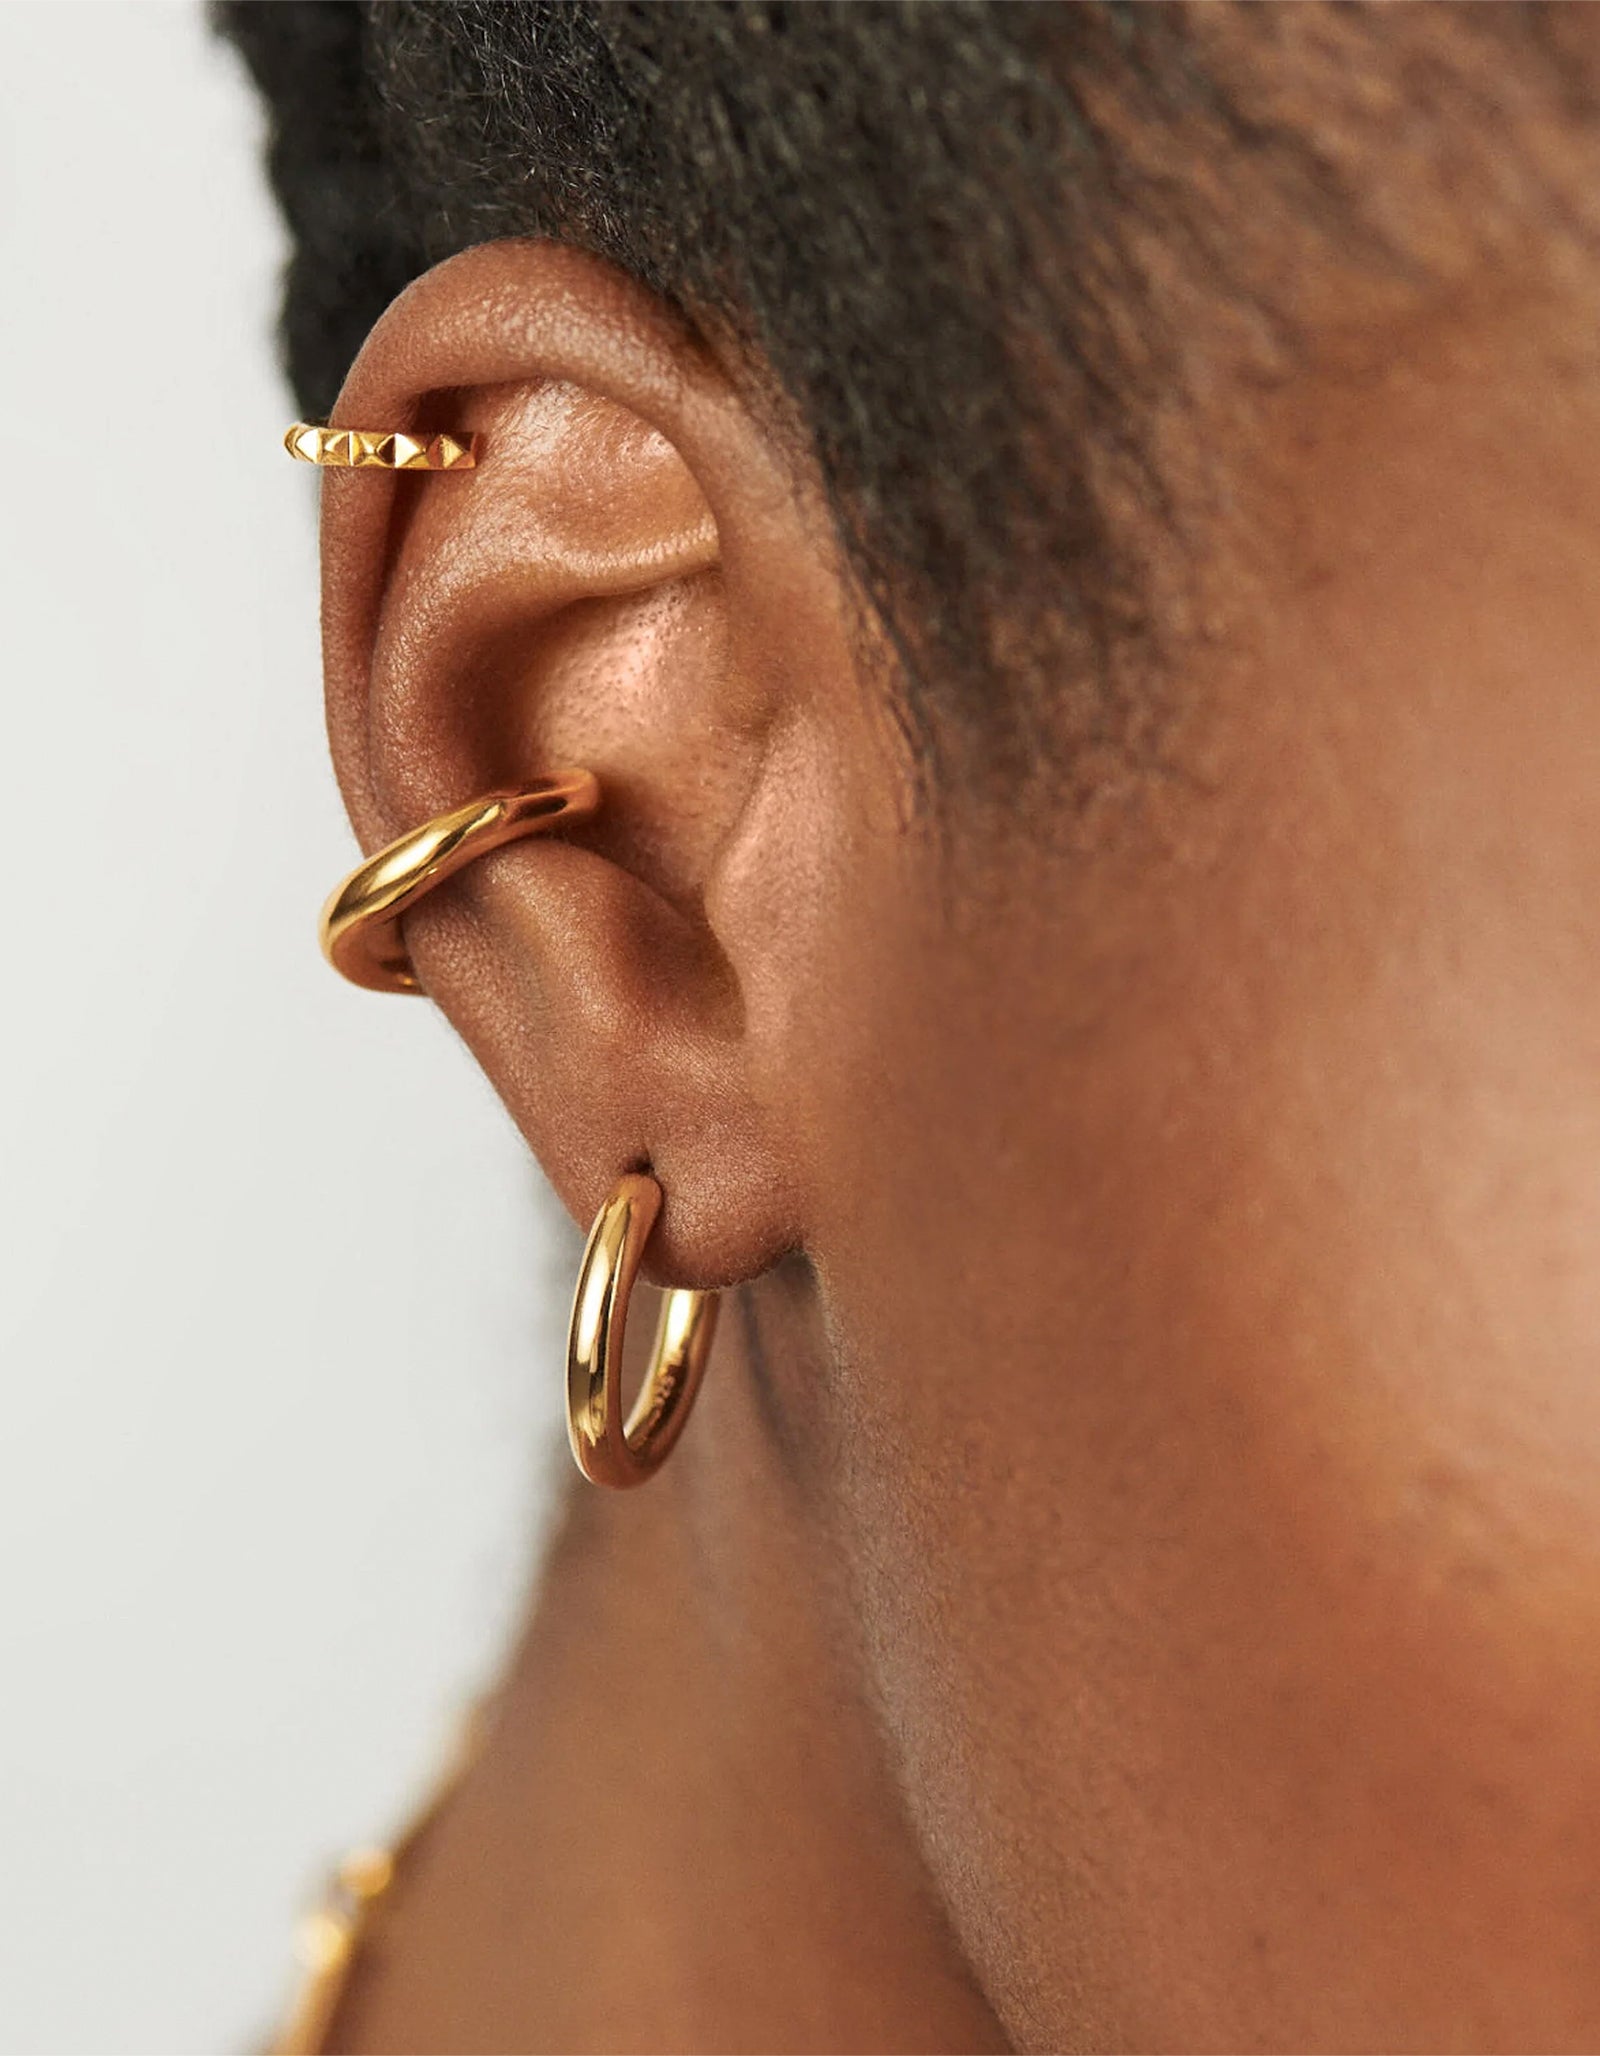 Deia Medium Hoop Earrings in 18k Gold Vermeil on Sterling Silver |  Jewellery by Monica Vinader